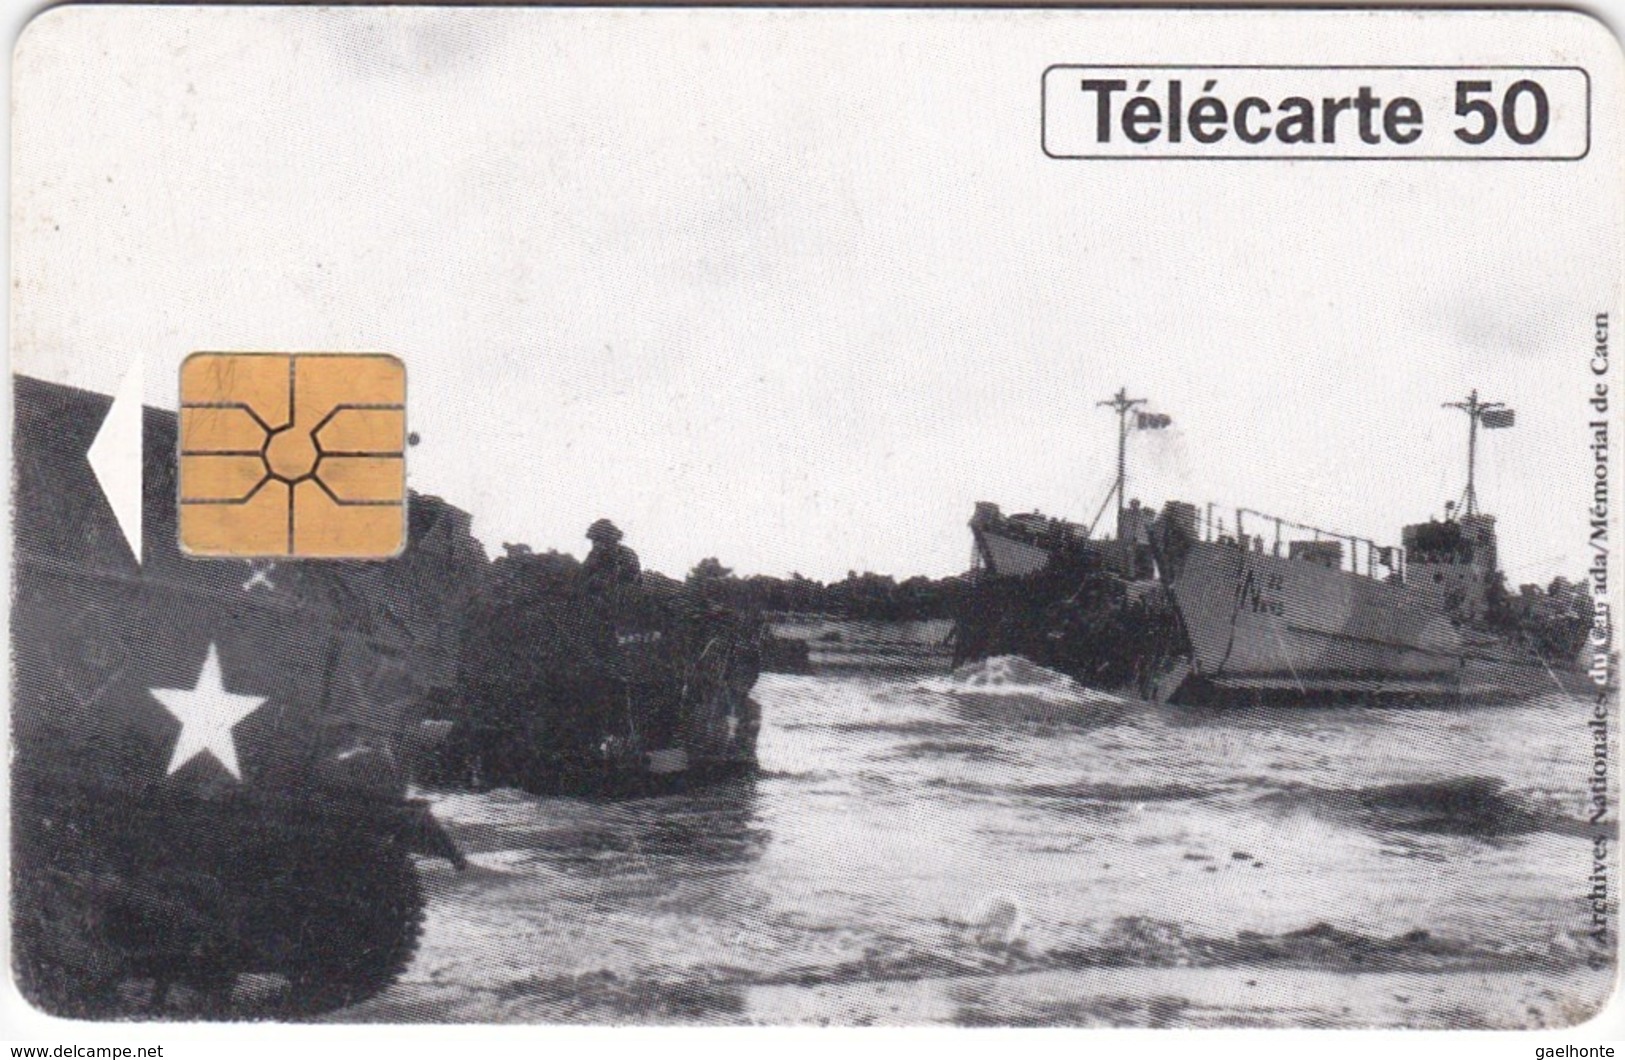 TC117 TÉLÉCARTE 50 UNITÉS - 1944-1994 - 50ème ANNIVERSAIRE DES DEBARQUEMENTS... - JUNO BEACH 06 JUIN 1944 - Armée